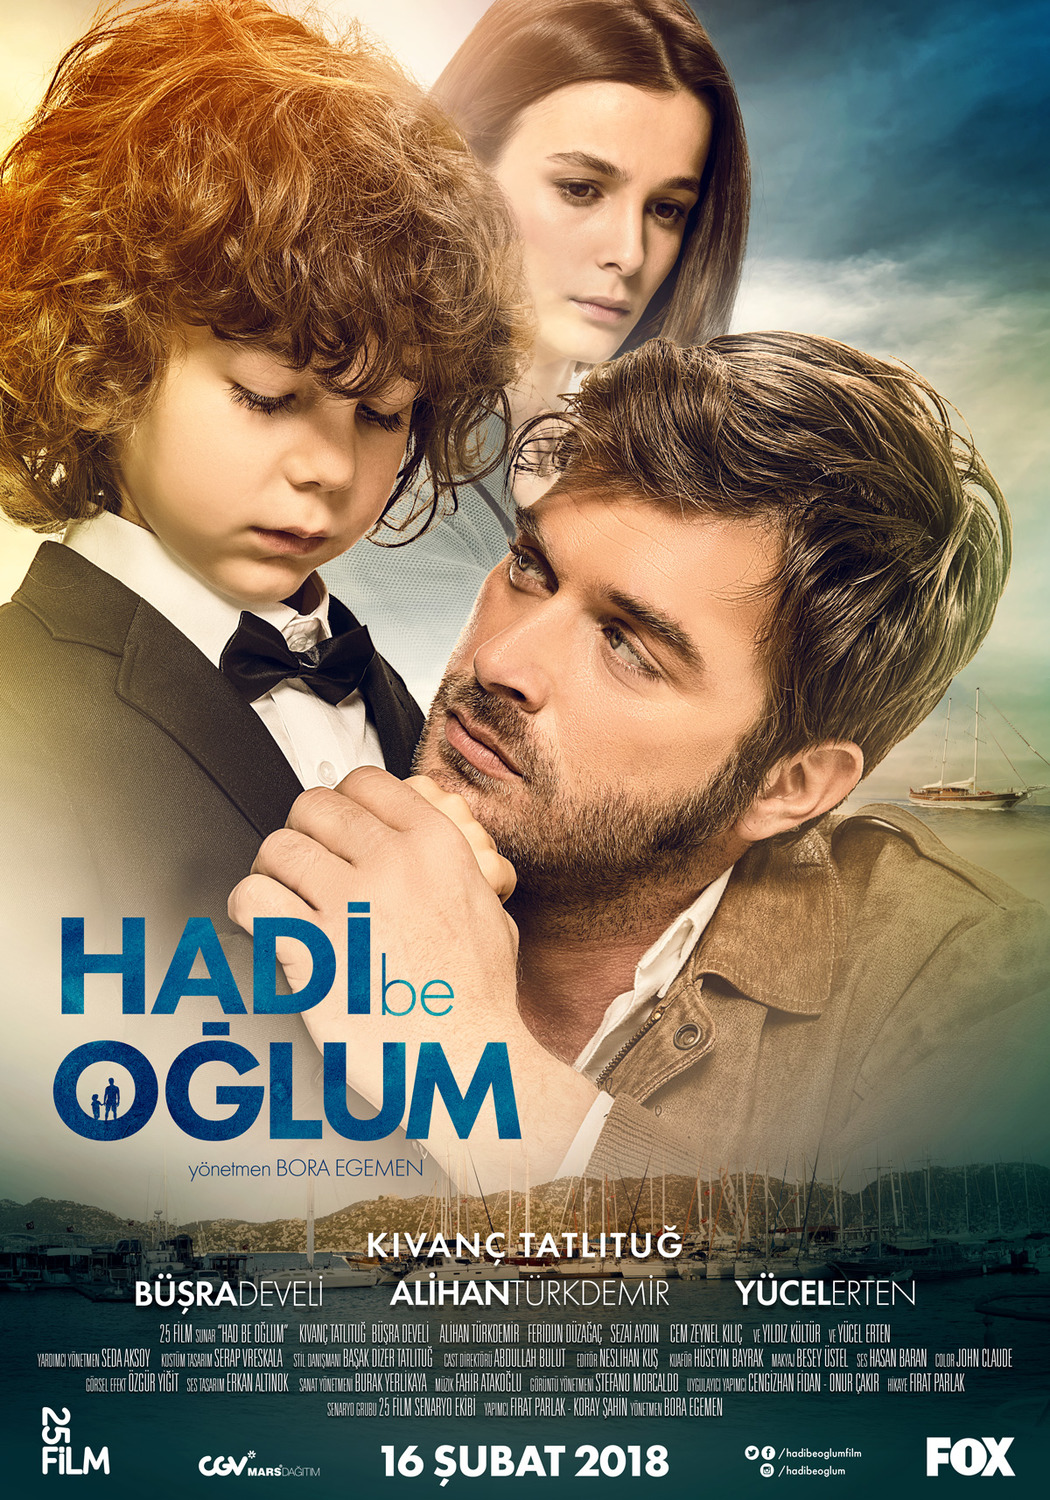 Extra Large Movie Poster Image for Hadi Be Oglum 